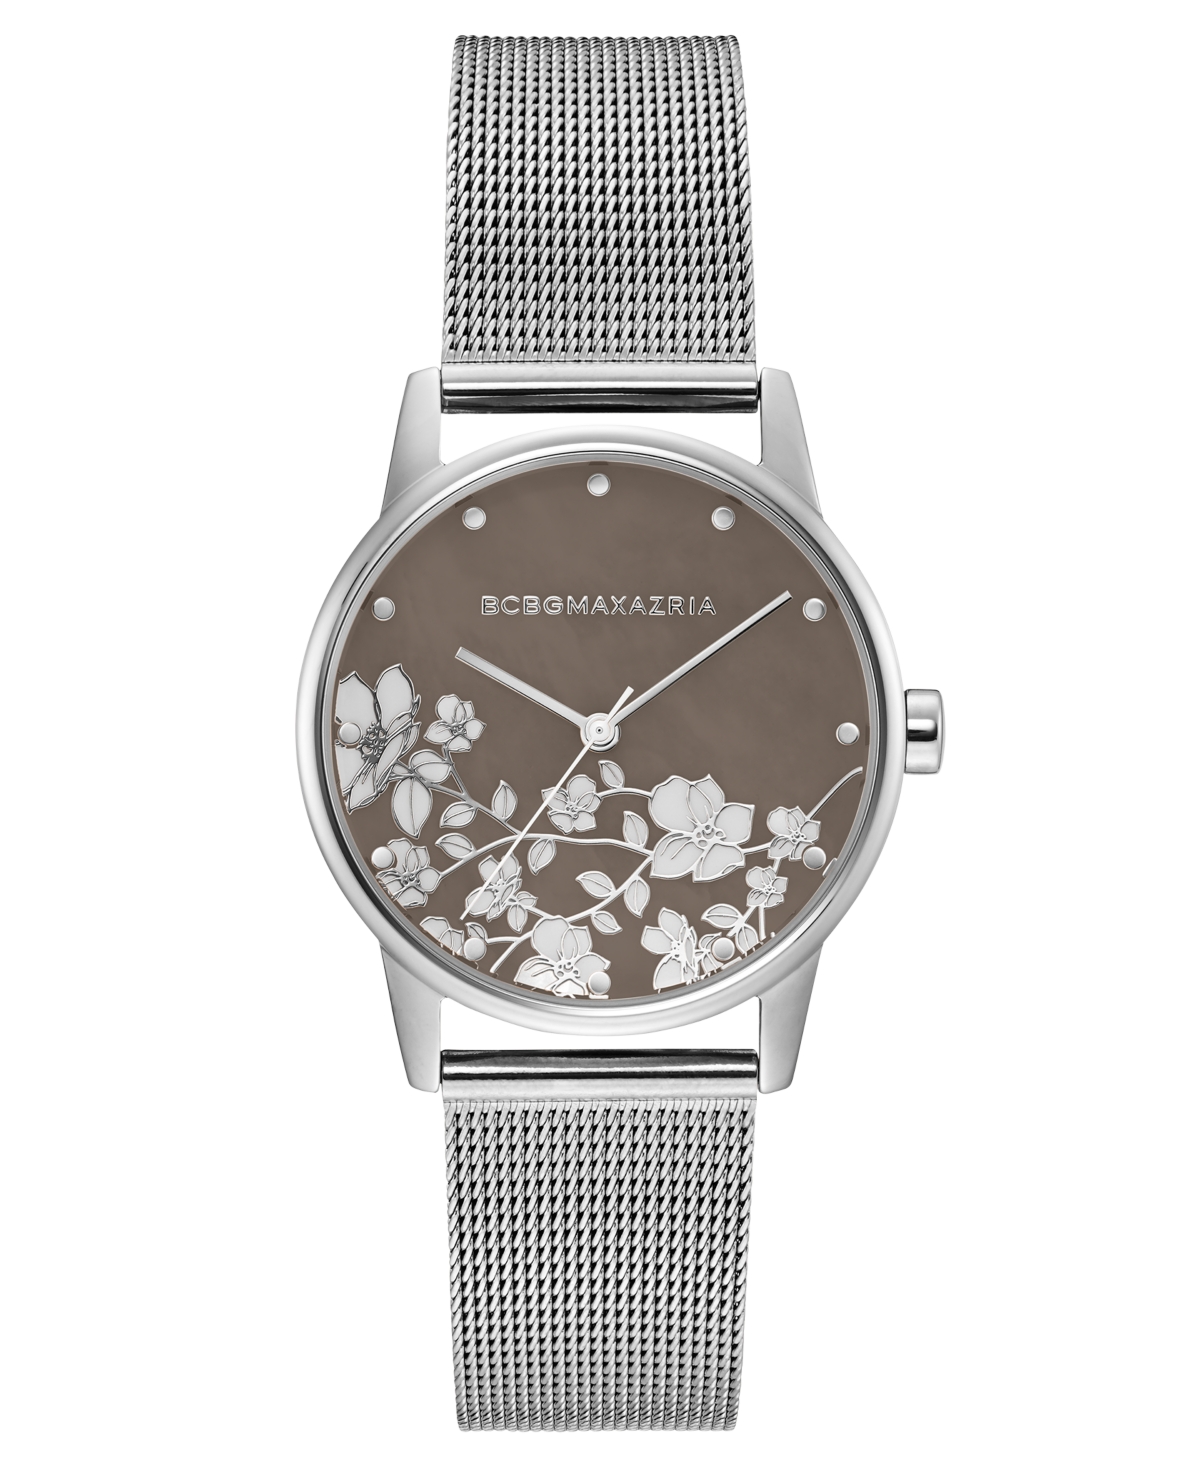 Bcbgmaxazria Ladies Round Silver Stainless Steel Mesh Strap Watch, 35mm